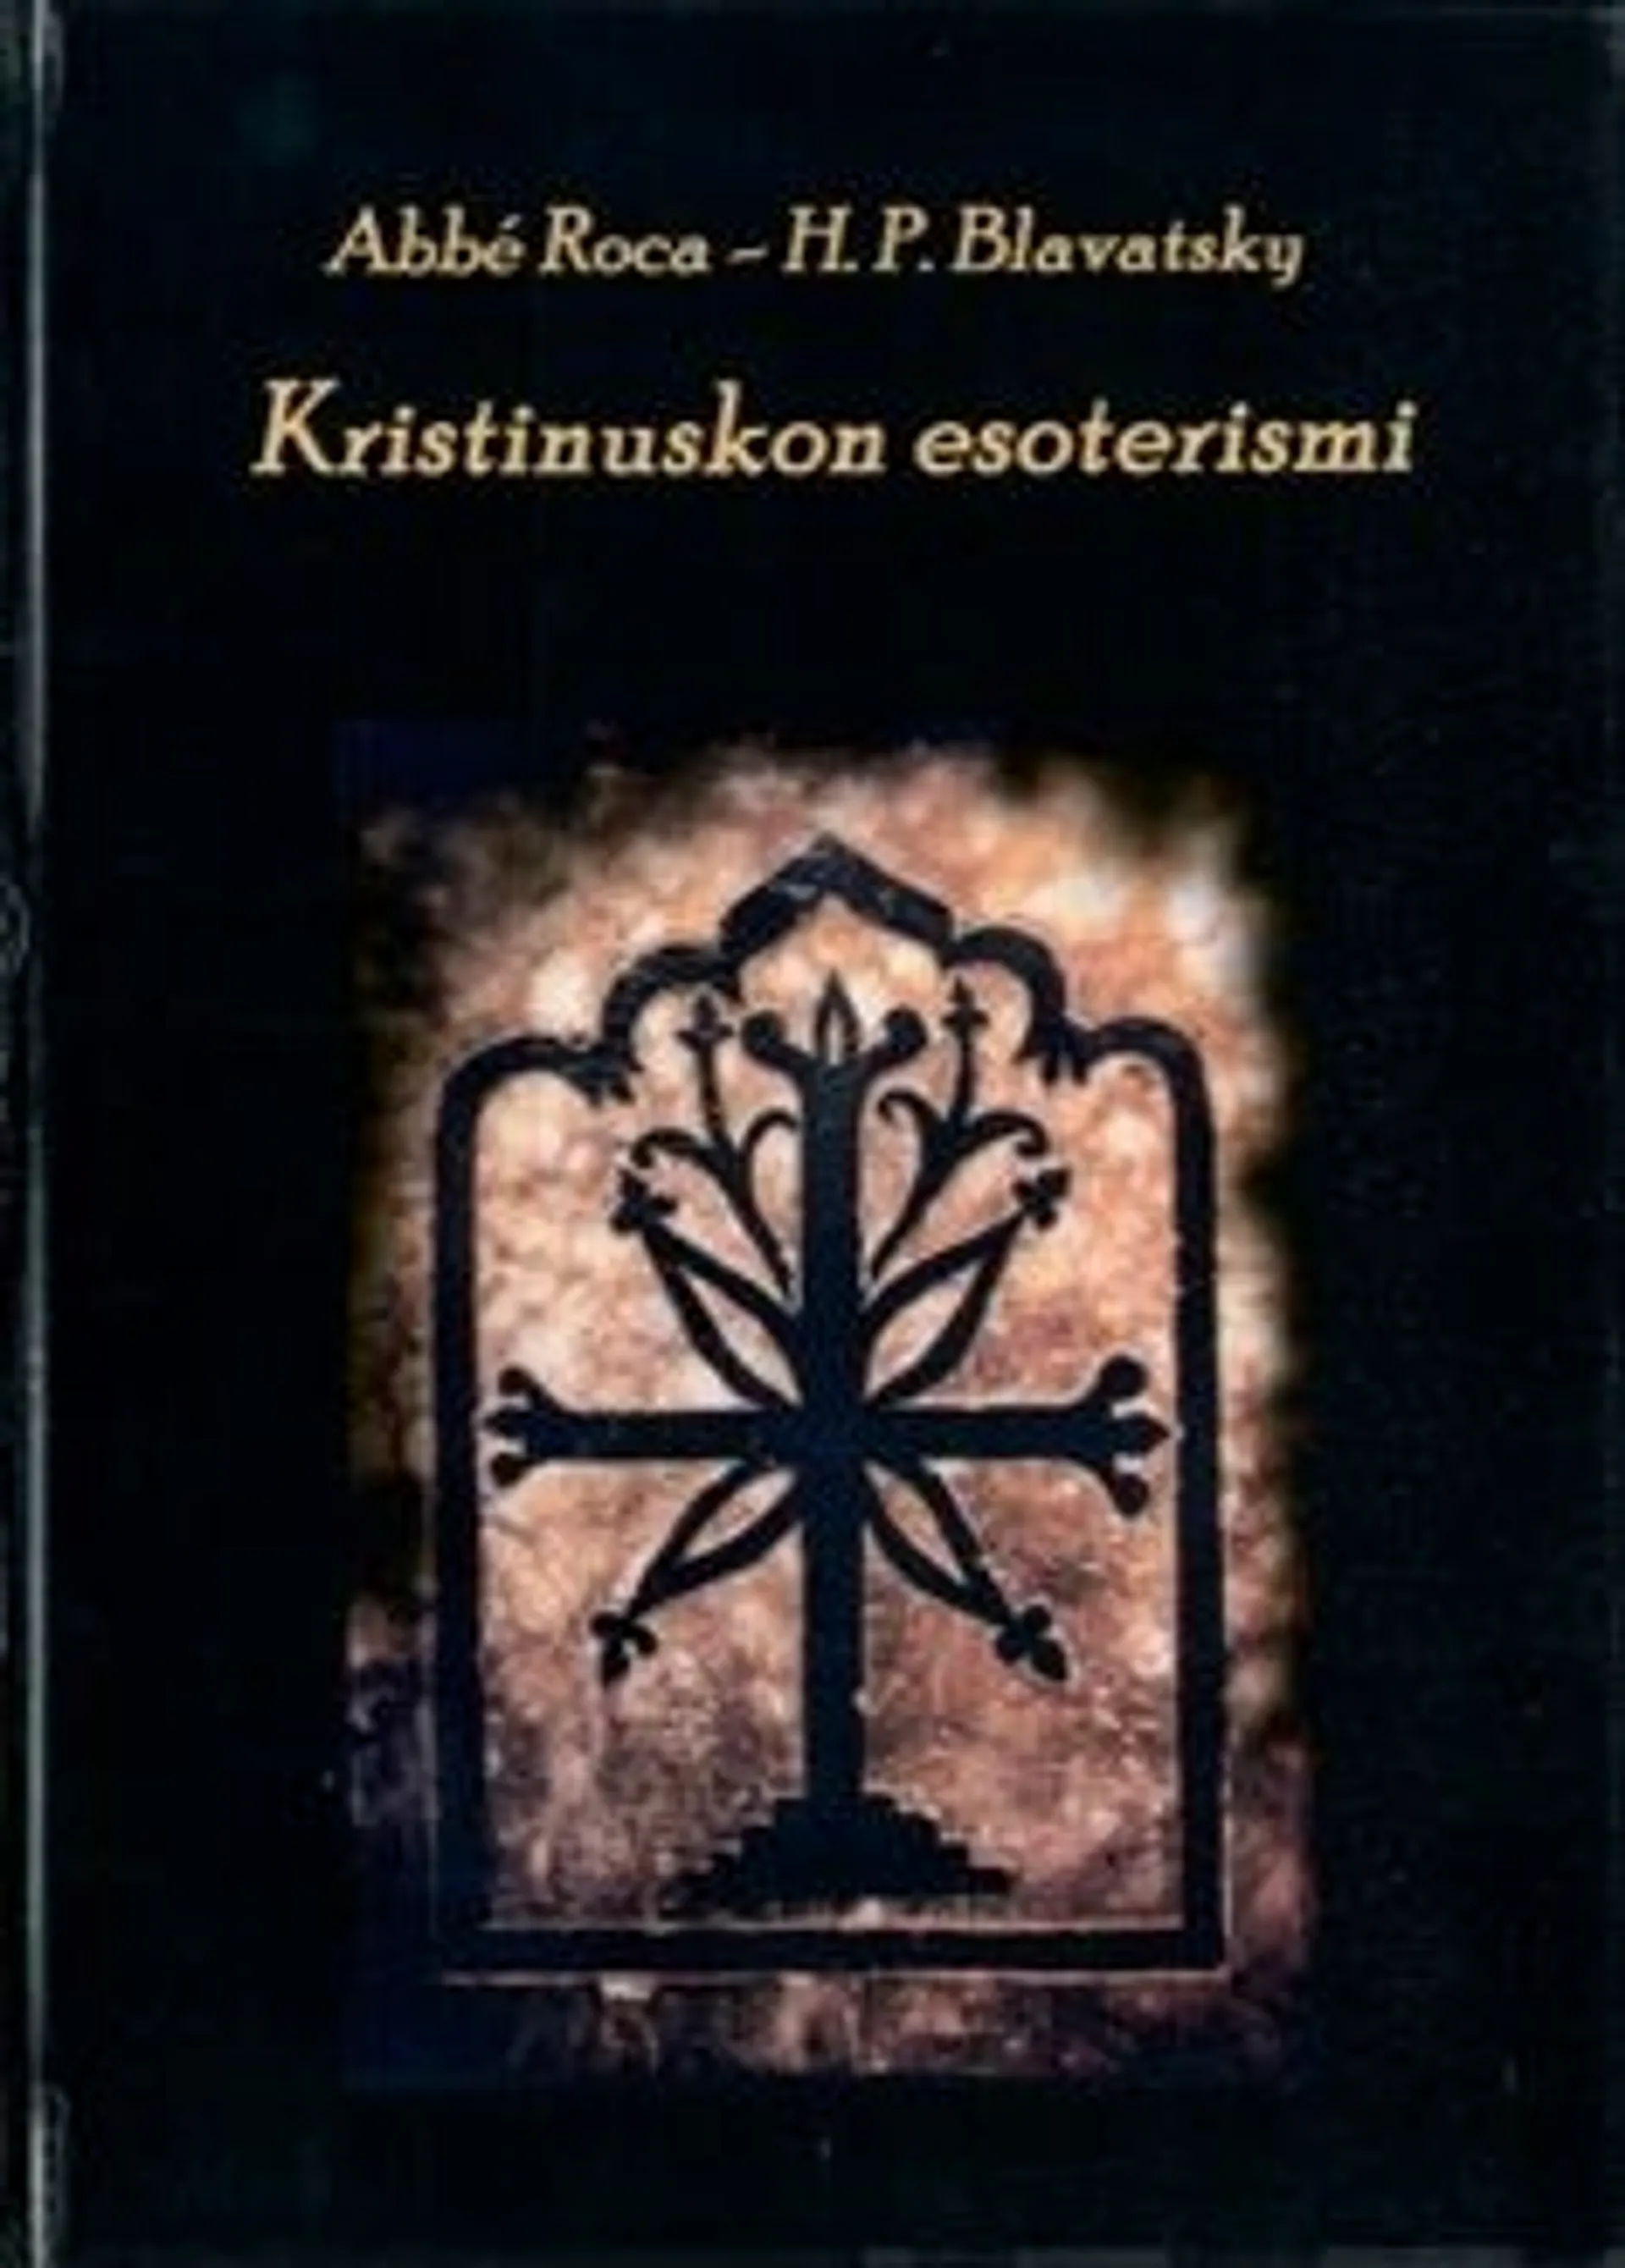 Roca, Kristinuskon esoterismi